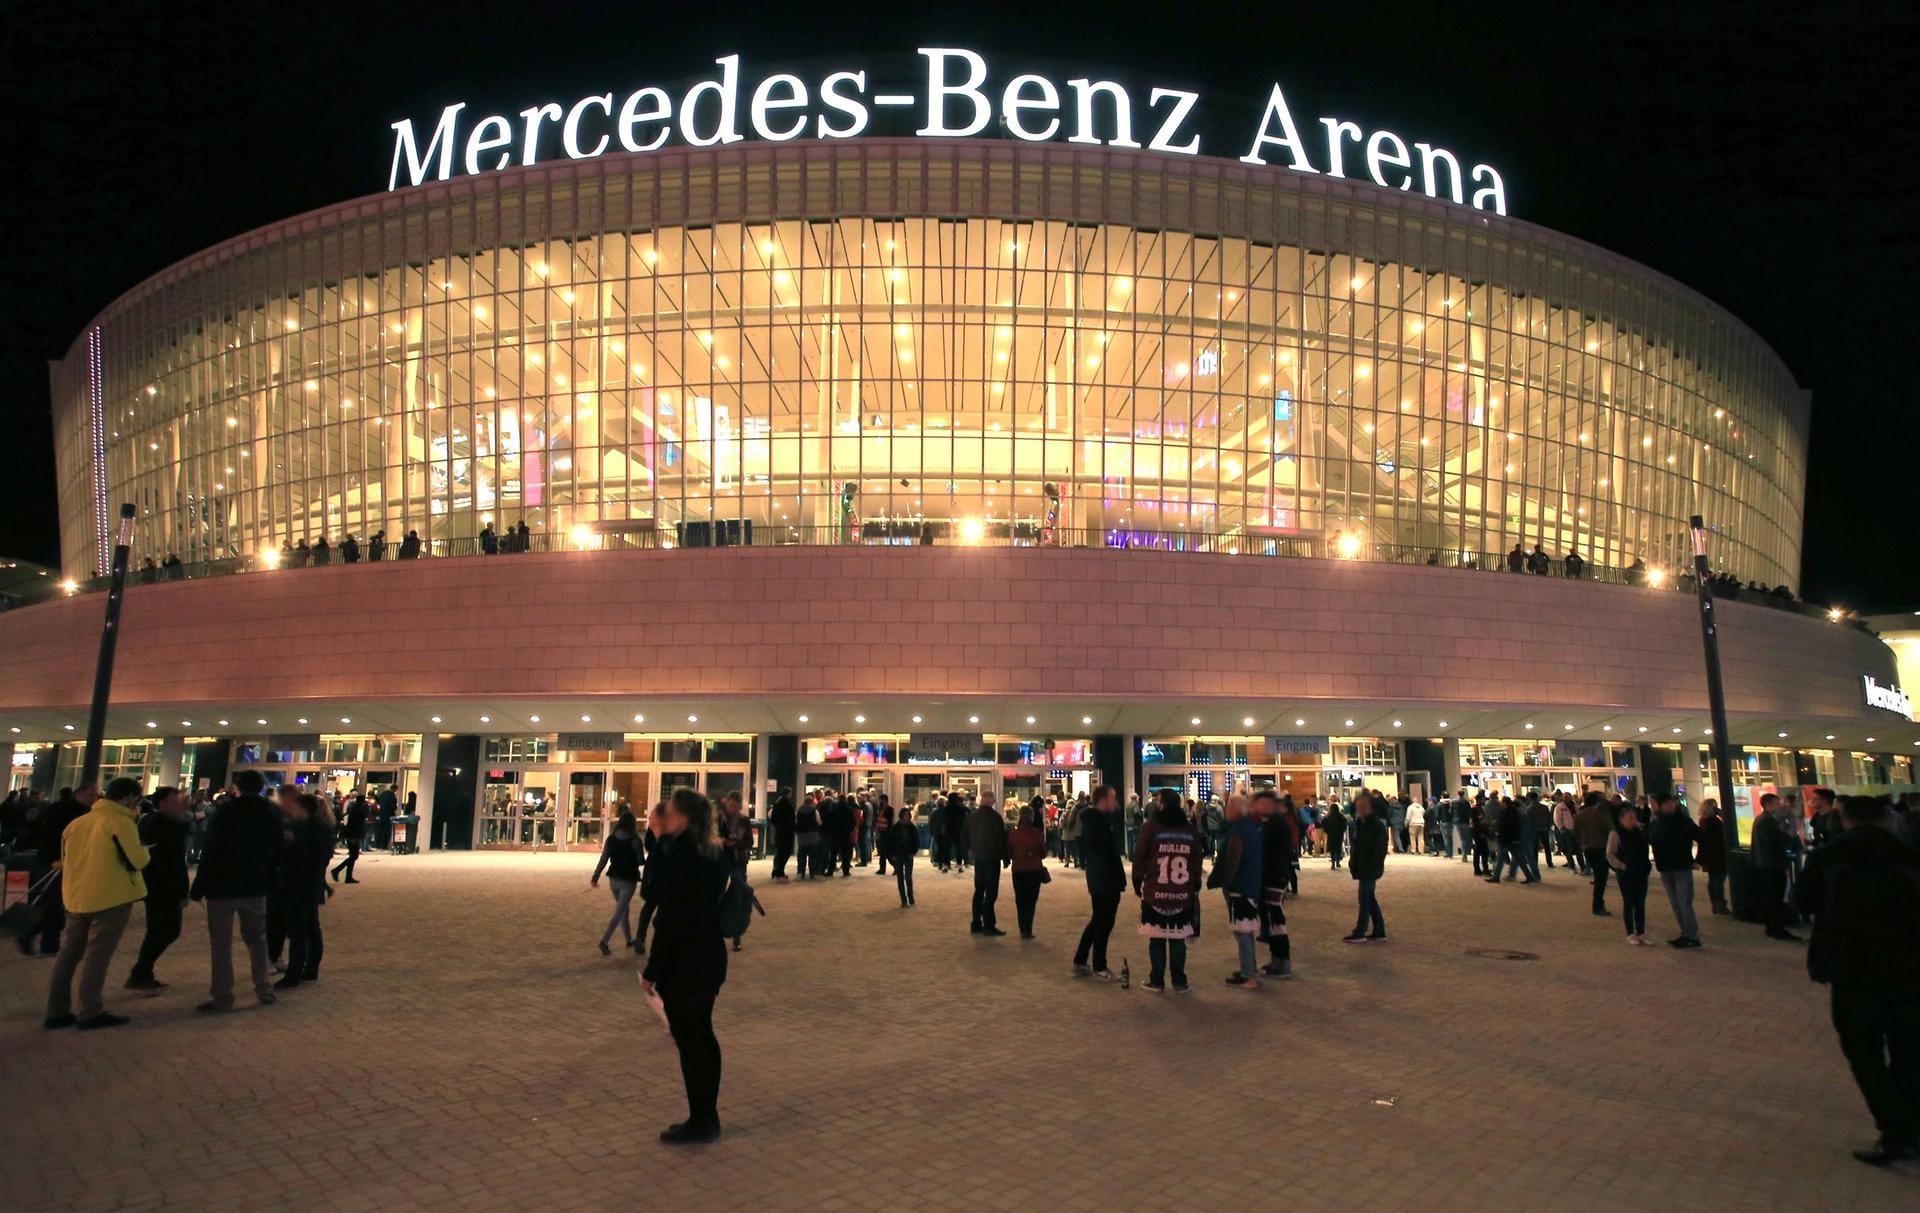 Mercedes-Benz Arena Berlin (14.800 Plätze): Hier finden die Spiele der deutschen Gruppe A statt. Am 10.01. eröffnet Deutschland hier die WM gegen Korea.